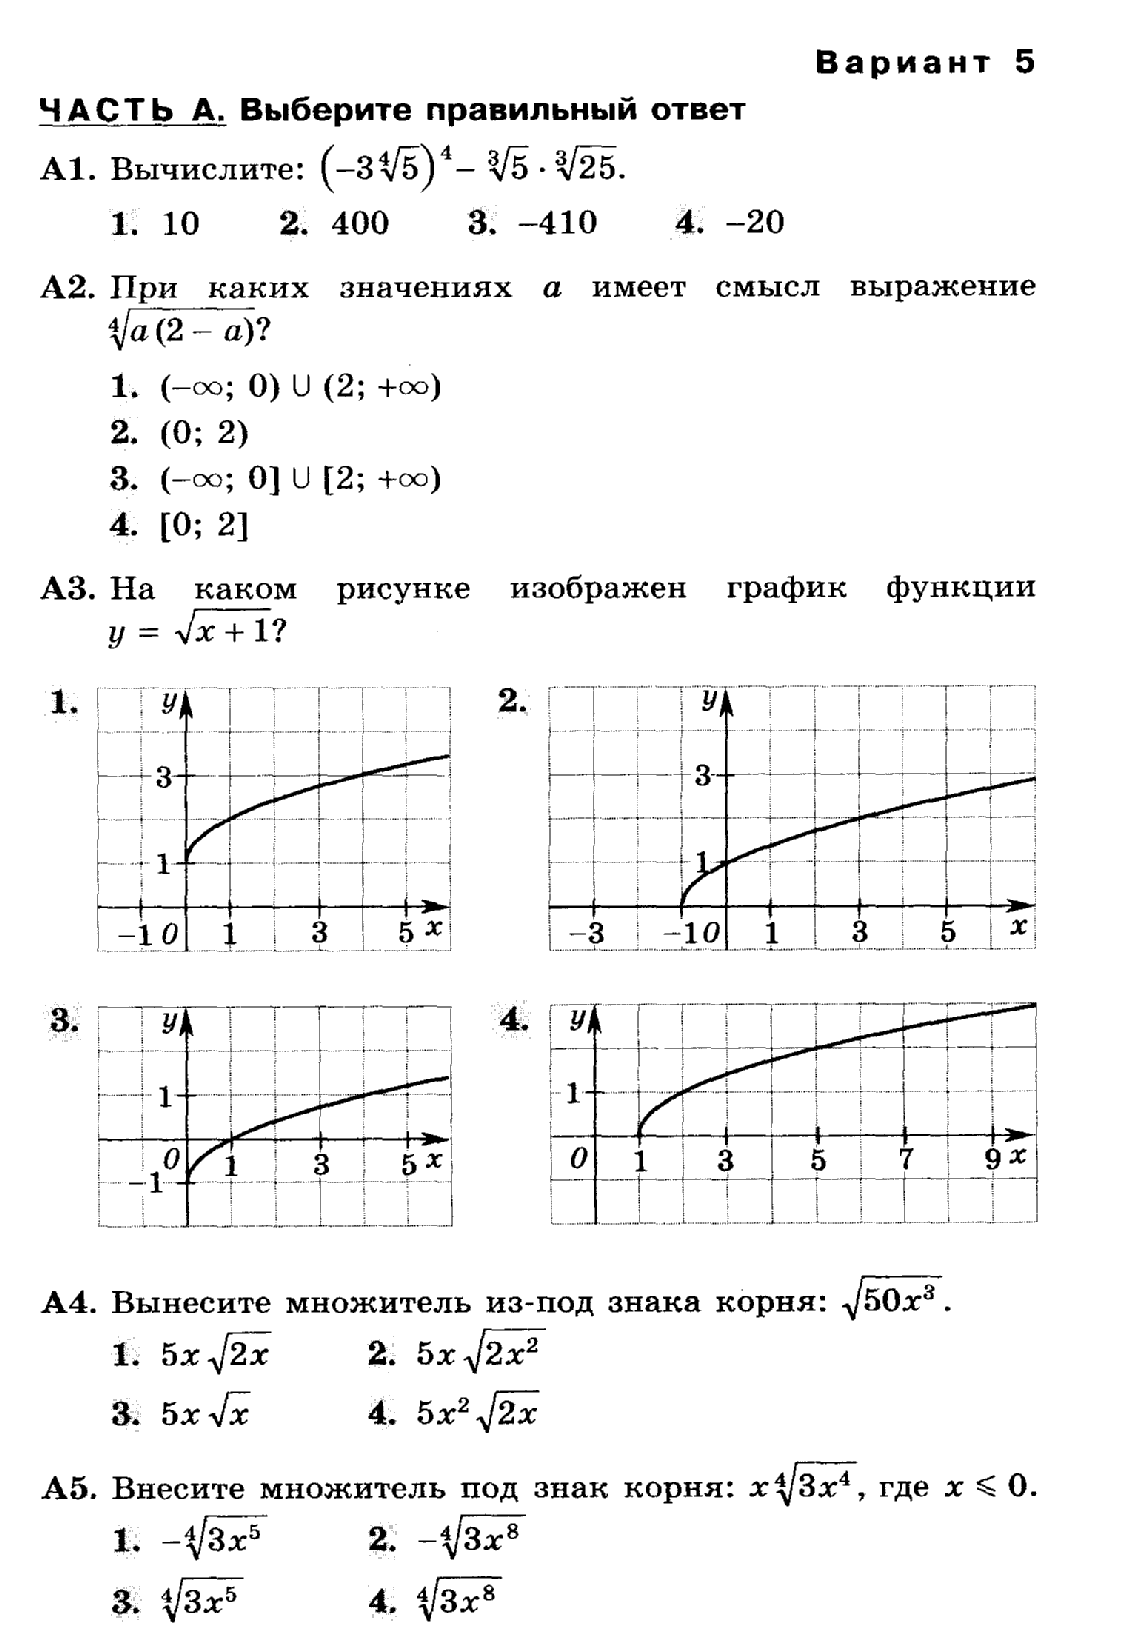 РАБОЧАЯ ПРОГРАММА по алгебре и началам анализа 11 класс (профильный уровень)